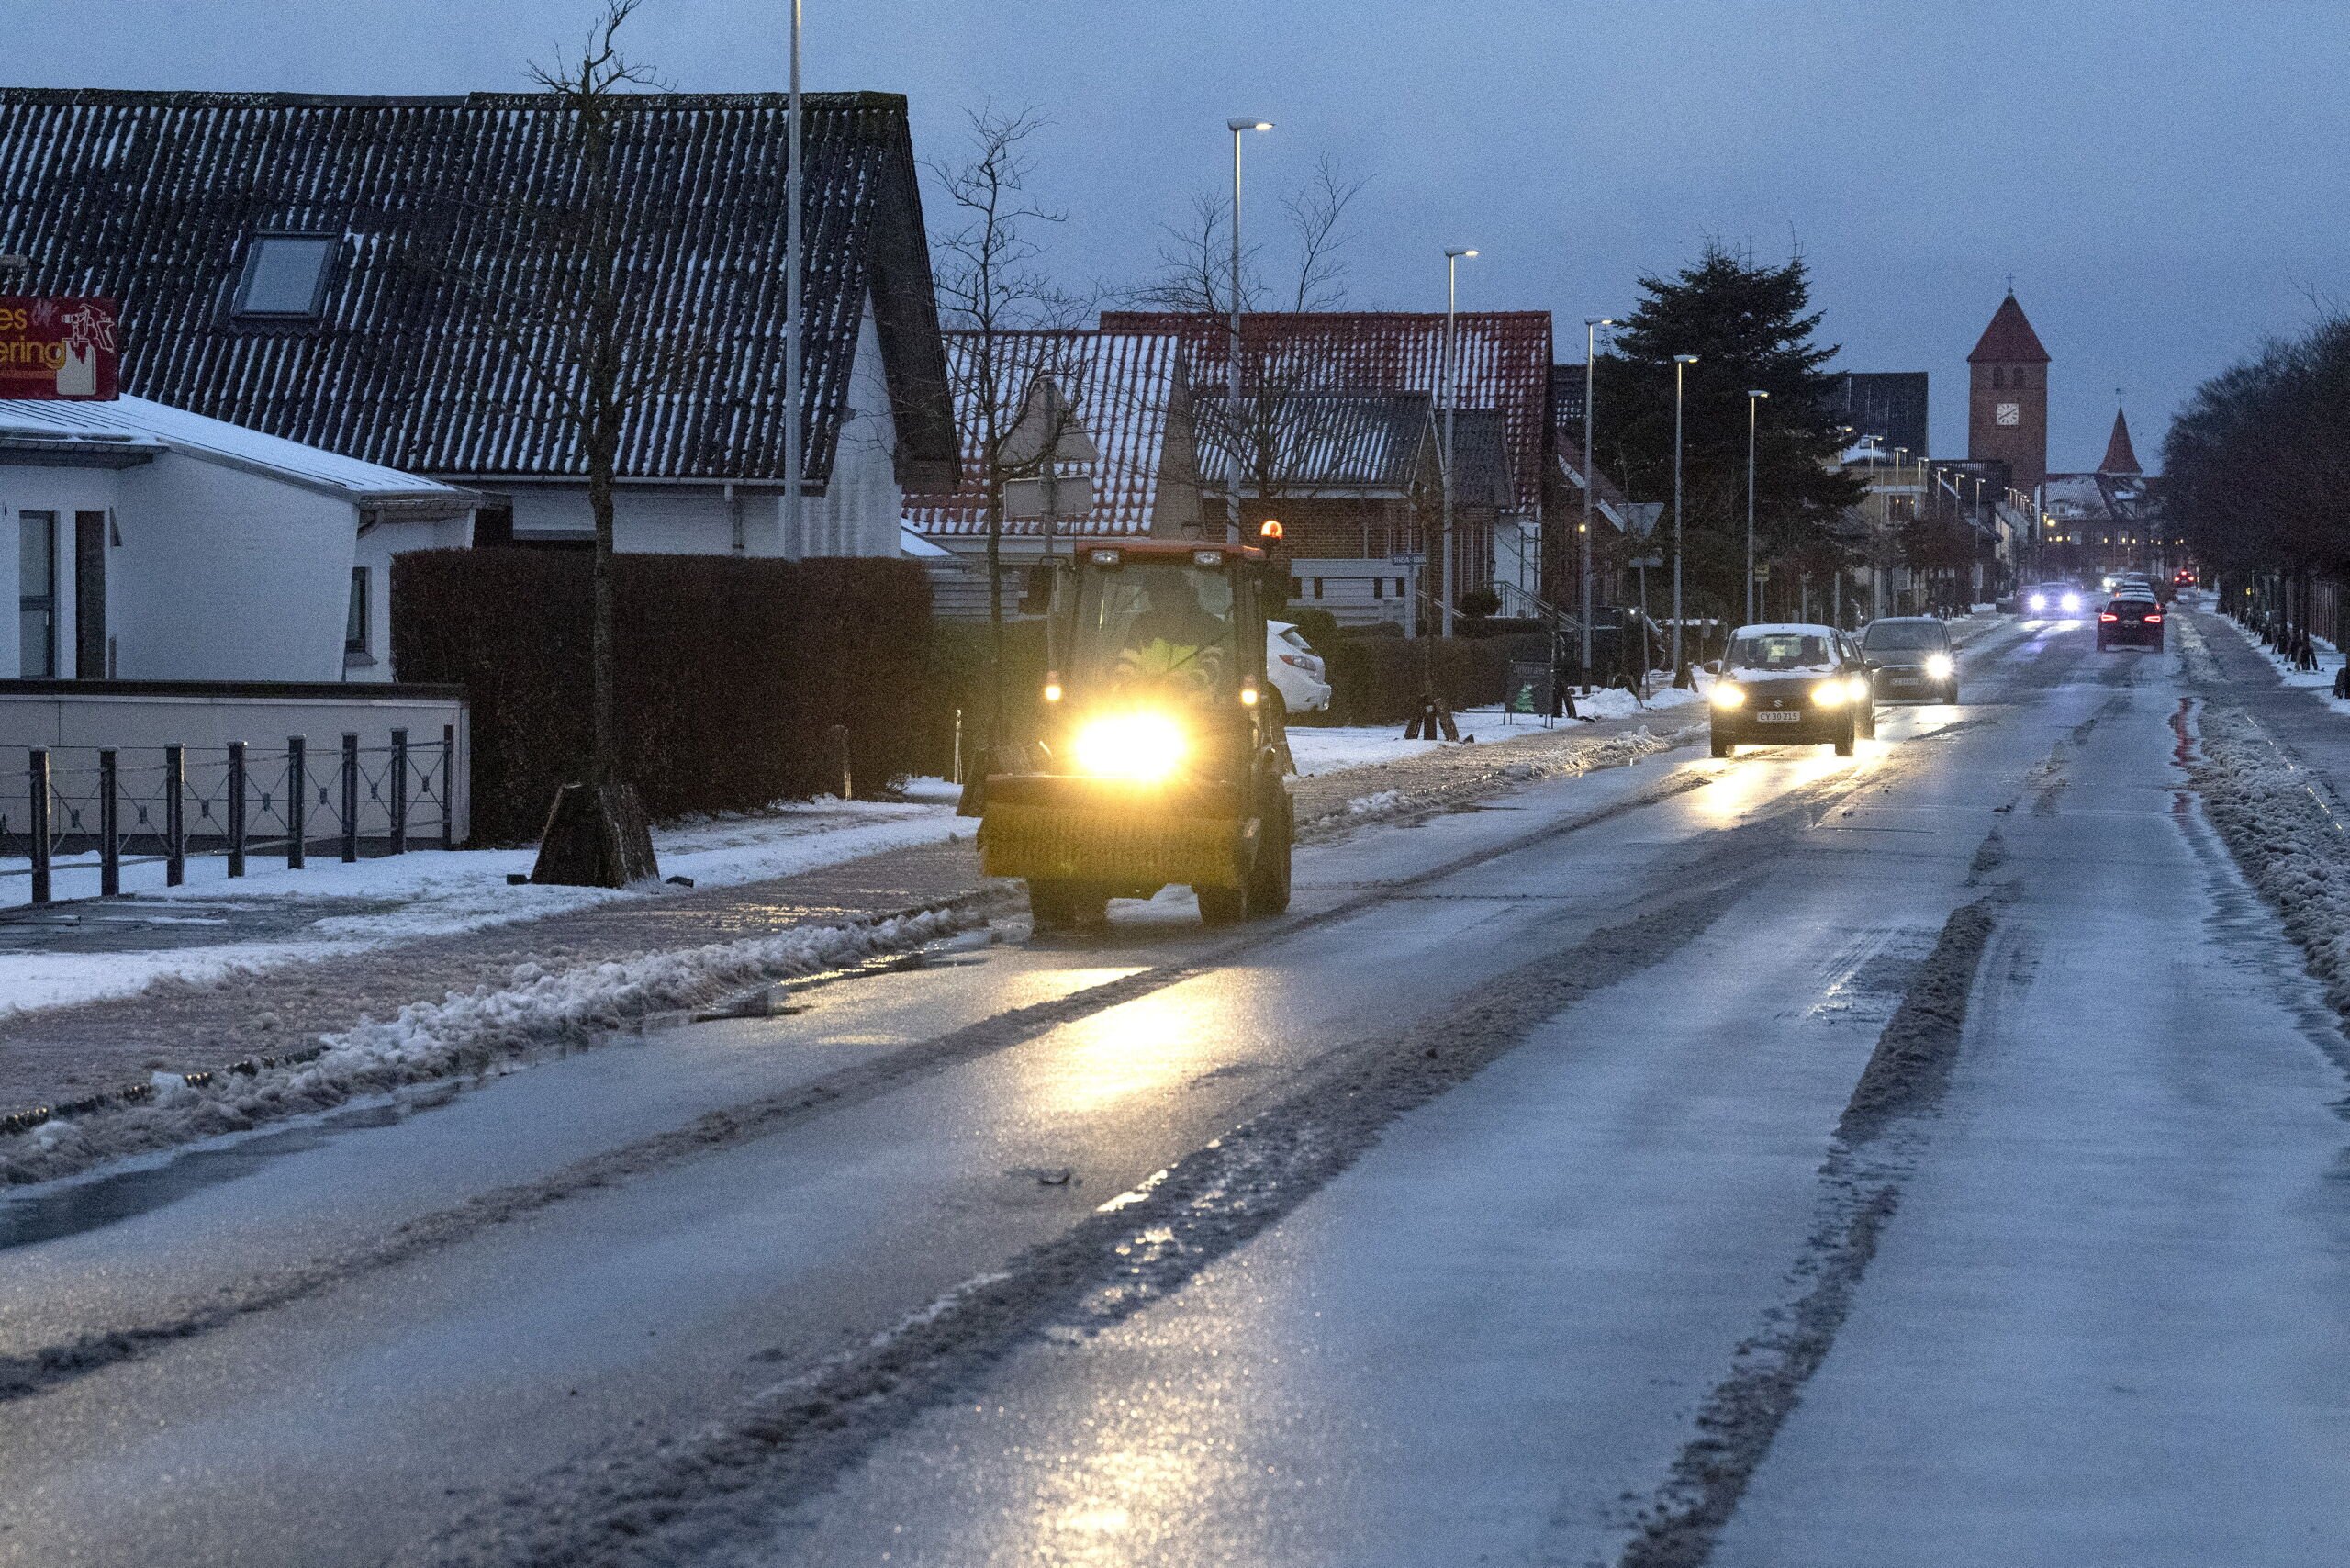 Solouheld på stribe: Smattede veje kom bag på nordjyske bilister